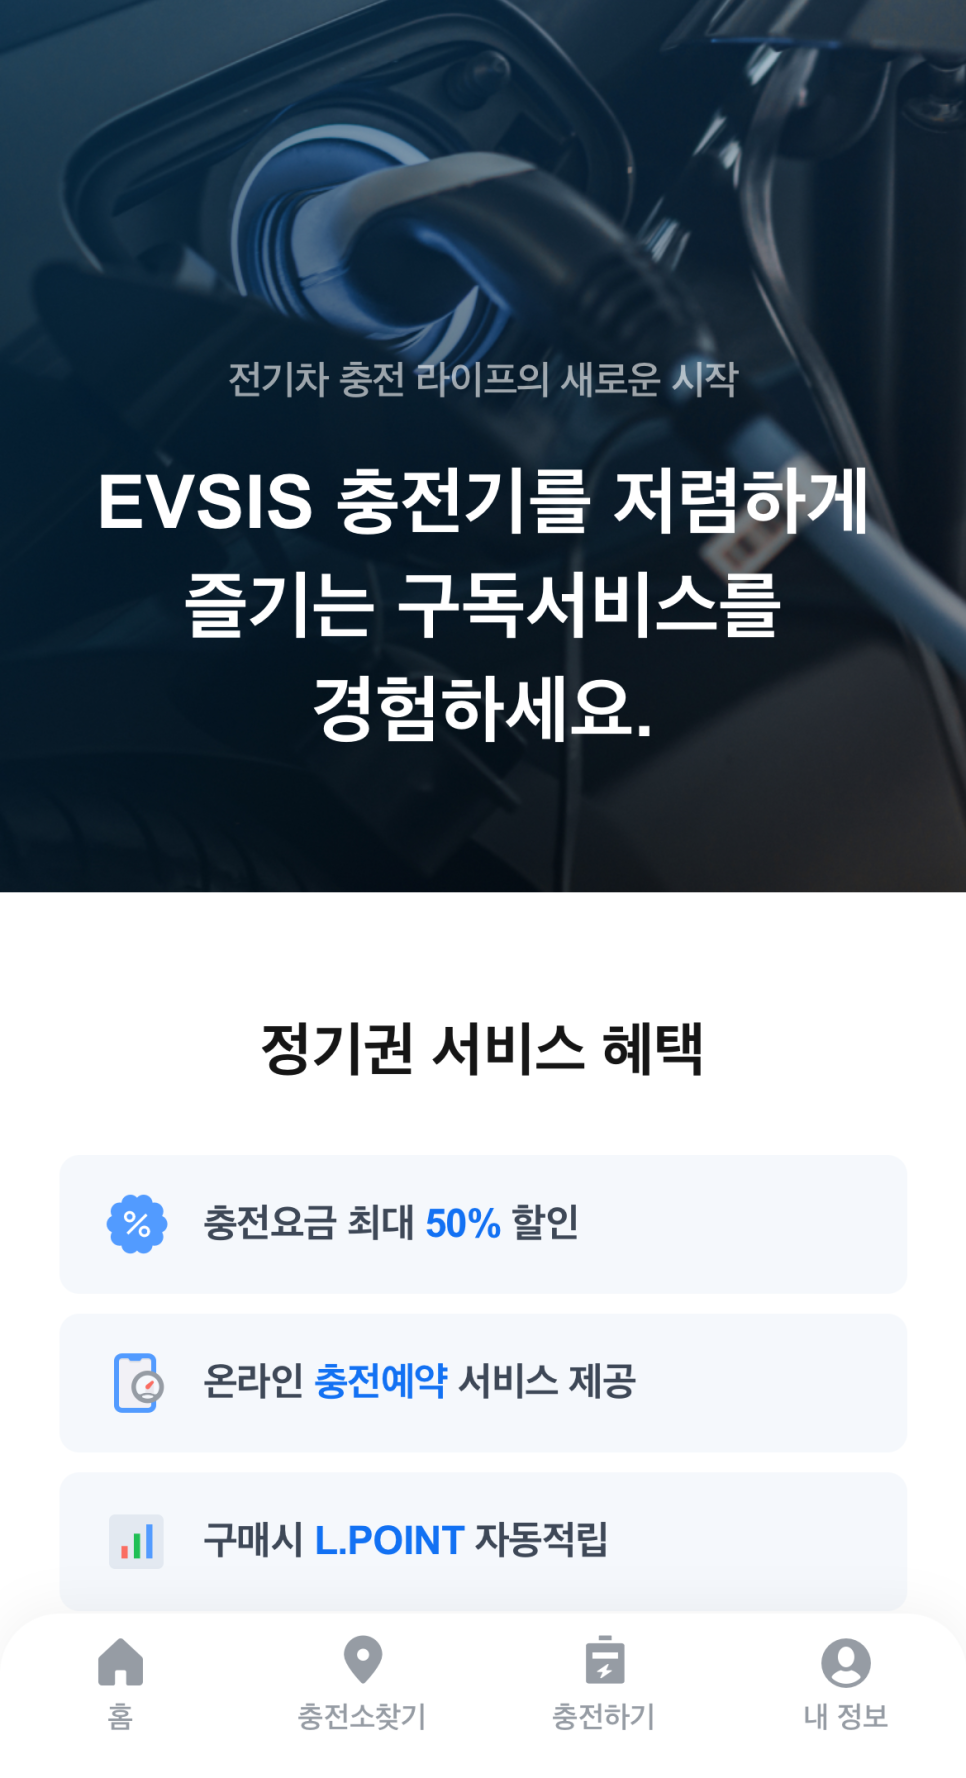 이브이시스 전기차 충전앱 소개, EVSIS 5월 가정의 달 이벤트 혜택